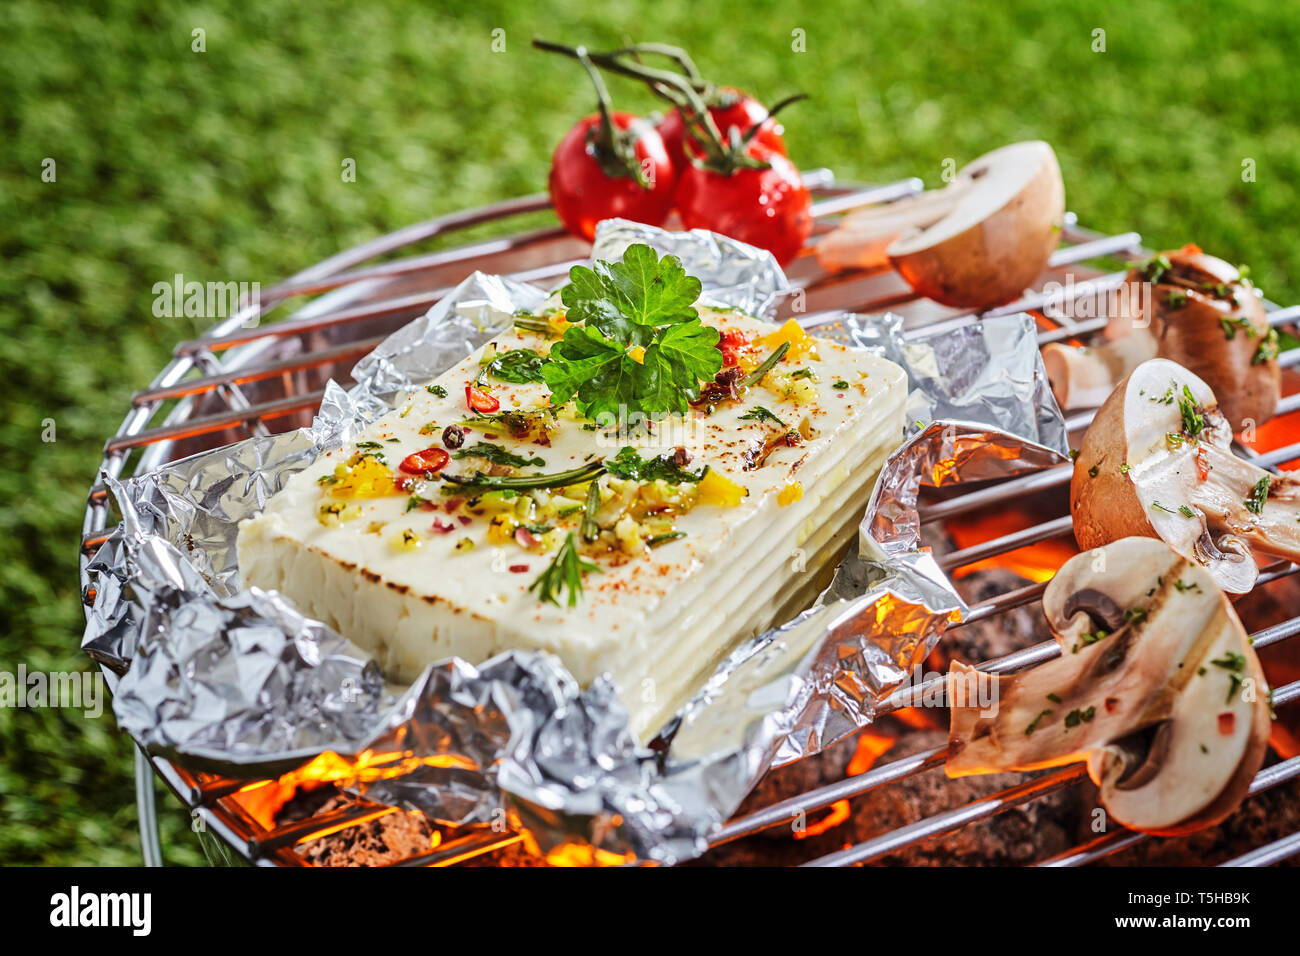 Teil der halloumi oder Tofu in Alufolie Grillen über dem Feuer auf einem  Grill mit frischen in Scheiben geschnittenen Champignons und Tomaten im  Freien auf grünem Gras Stockfotografie - Alamy